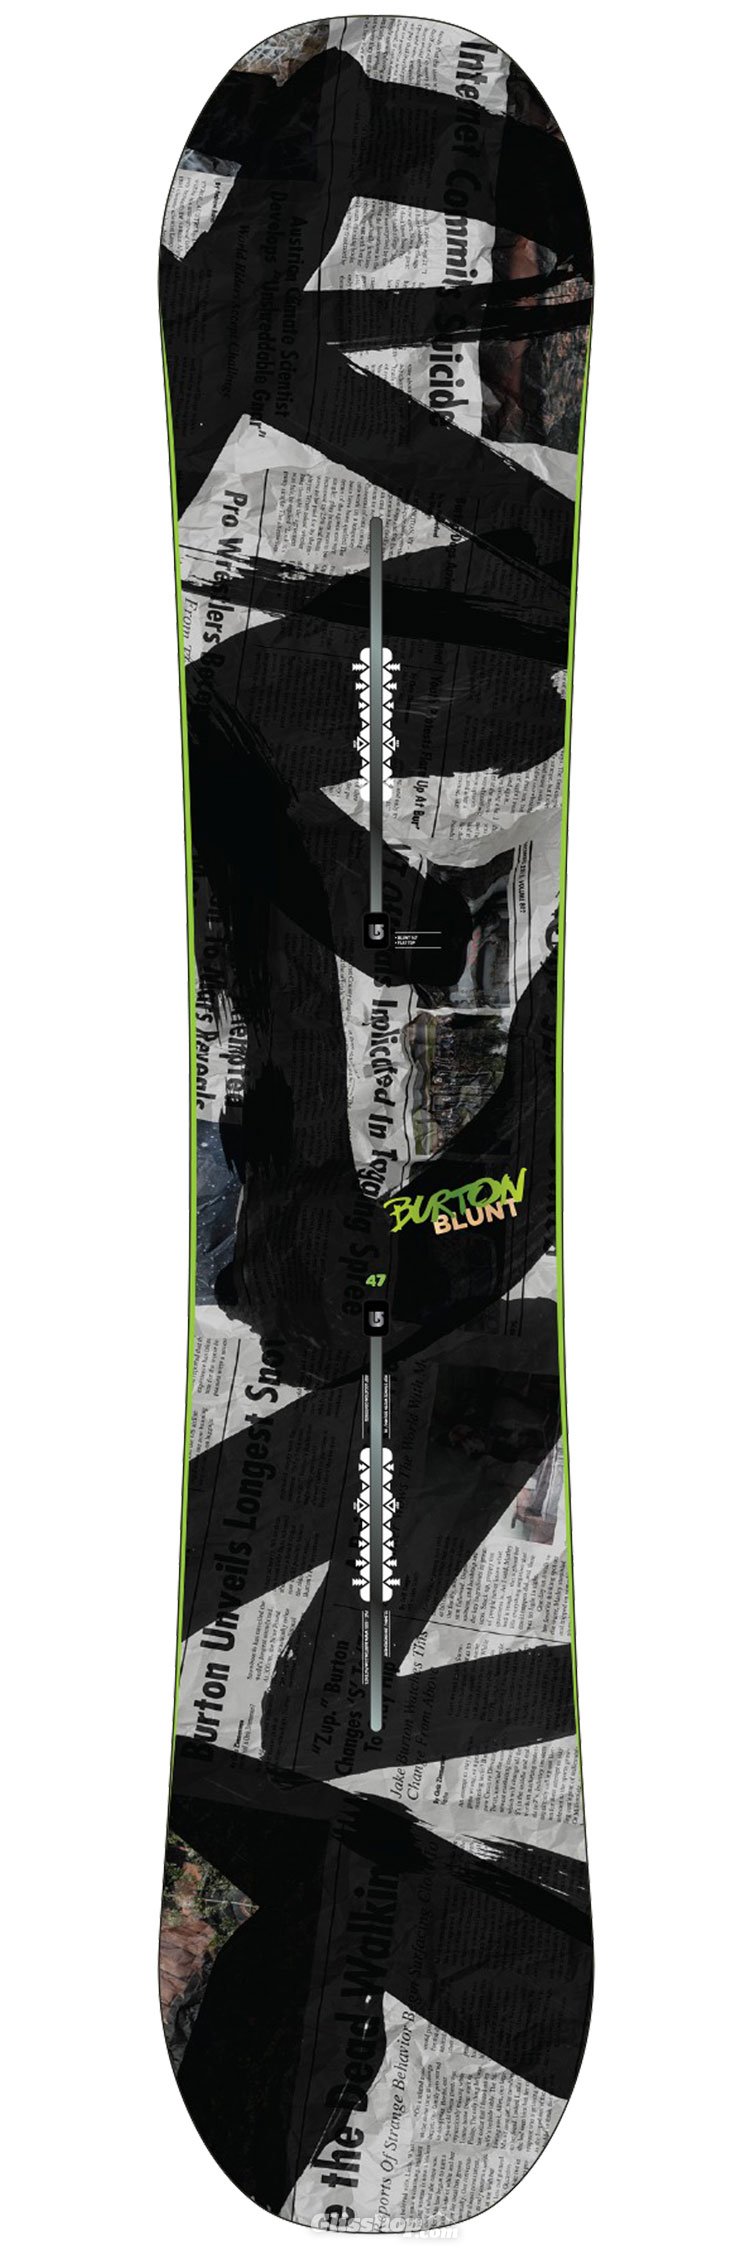 opwinding Brandweerman Verlammen Snowboard plank Burton Blunt - Winter 2015 | Glisshop